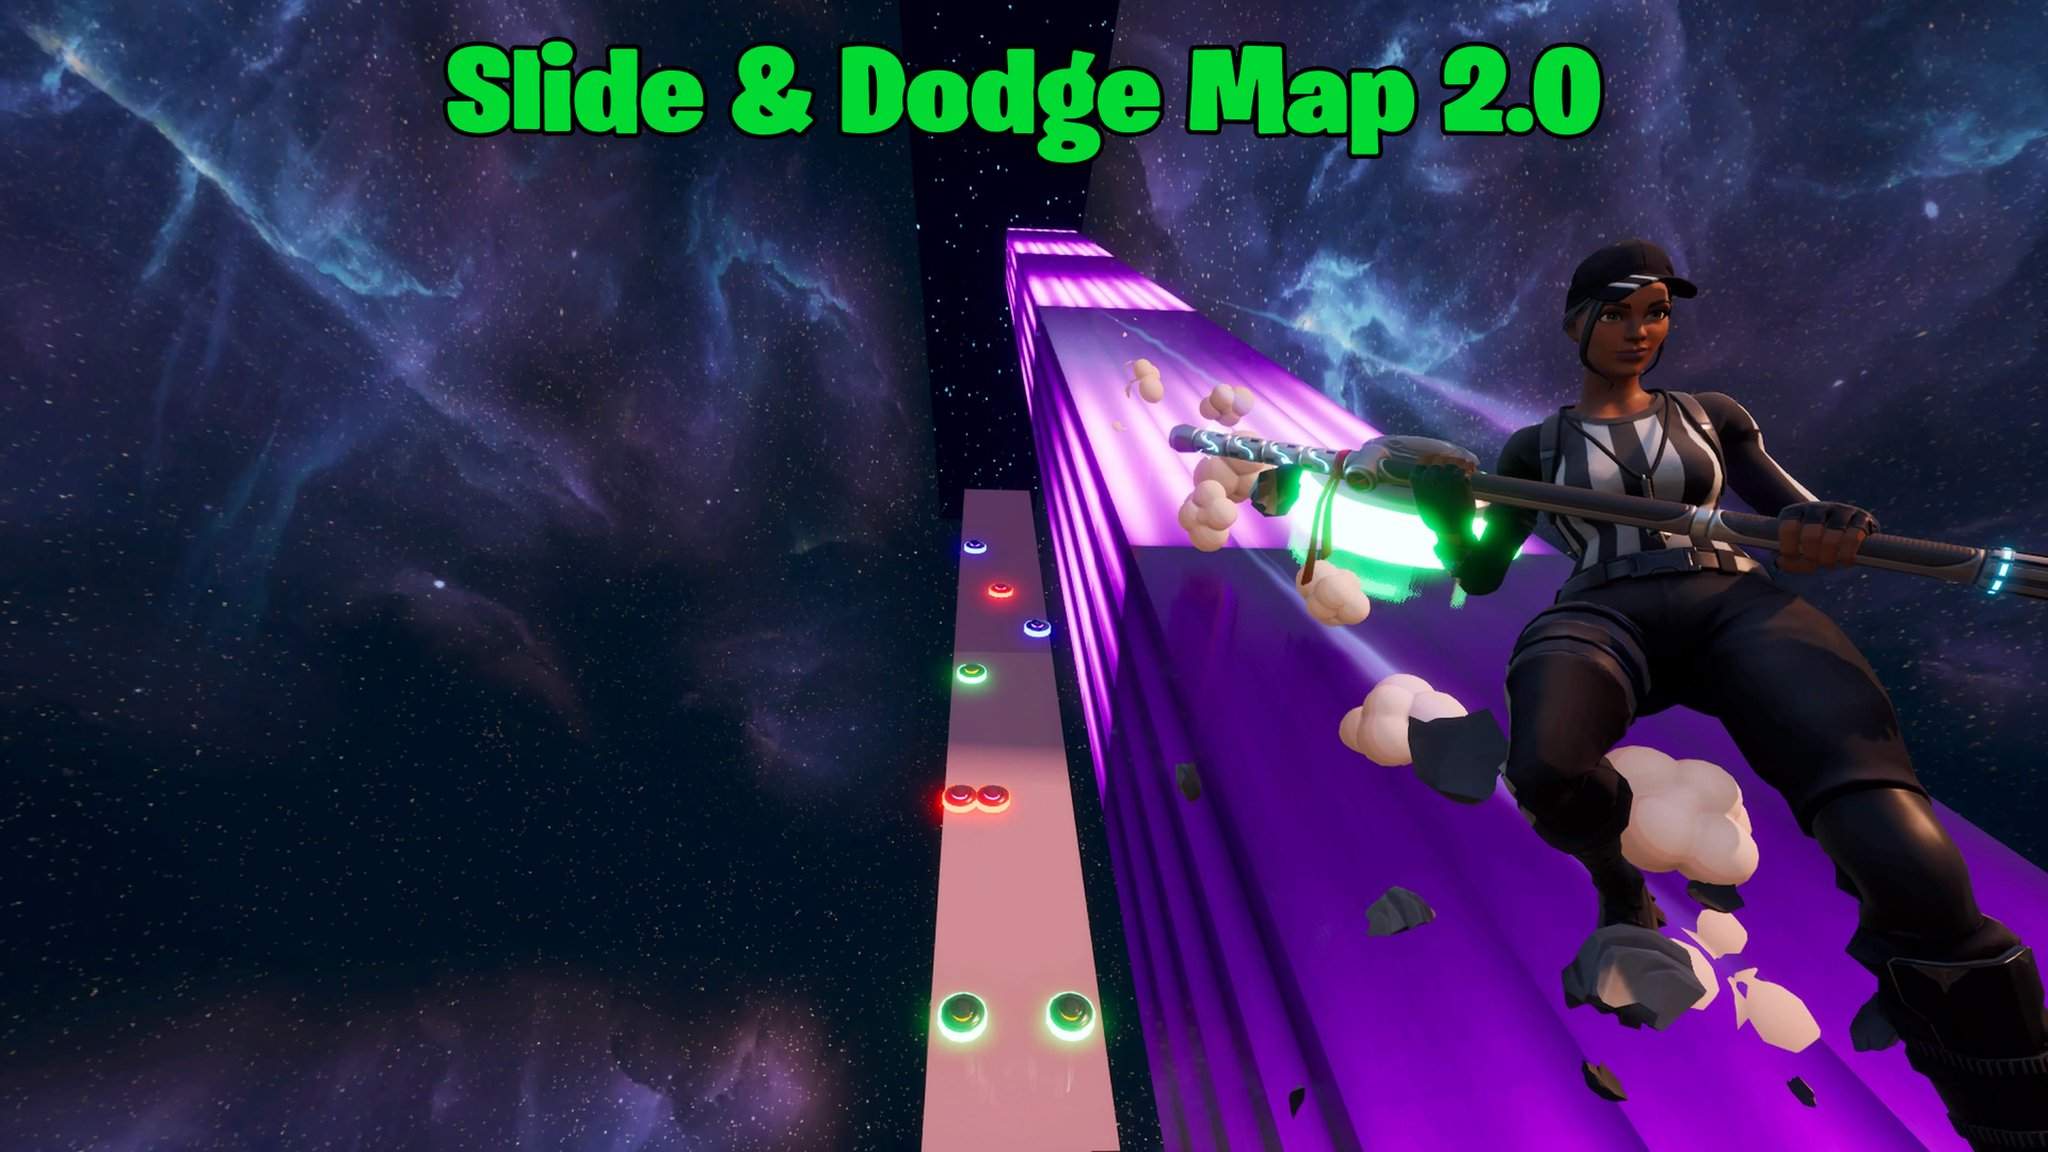 SLIDE & DODGE 2.0